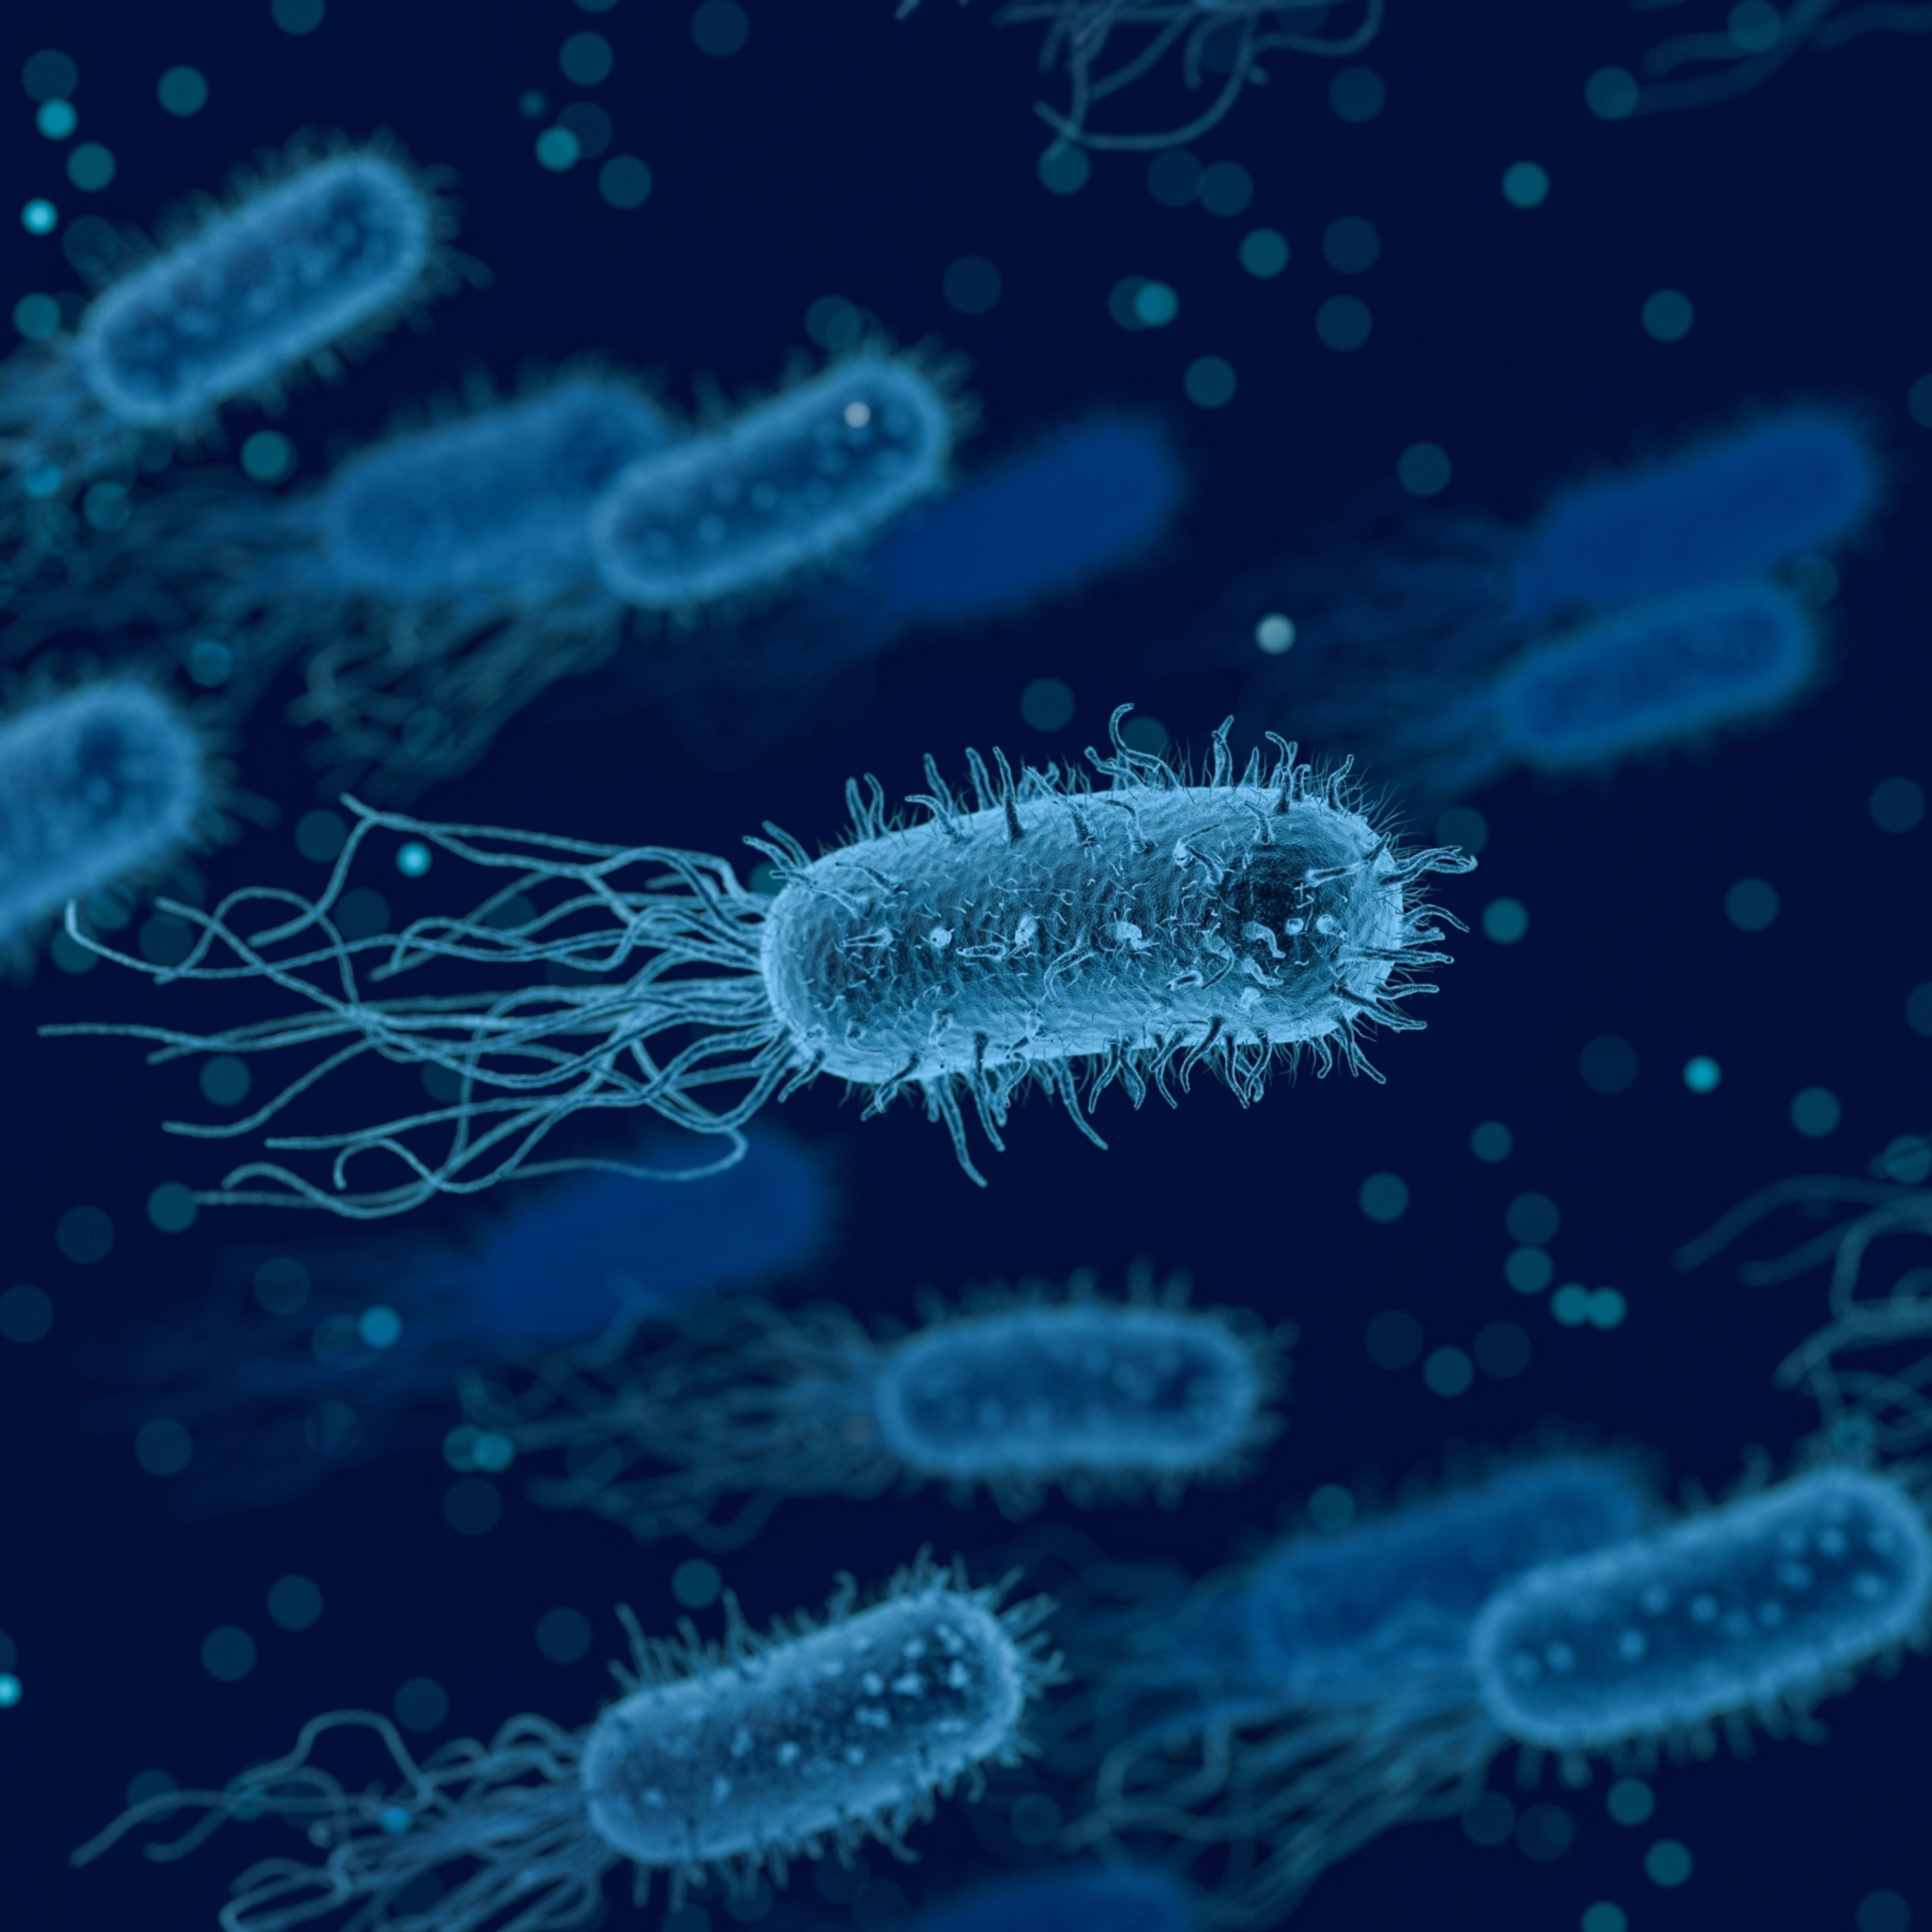 Els fagocitadors de bacteris, el possible substitut dels antibiòtics?